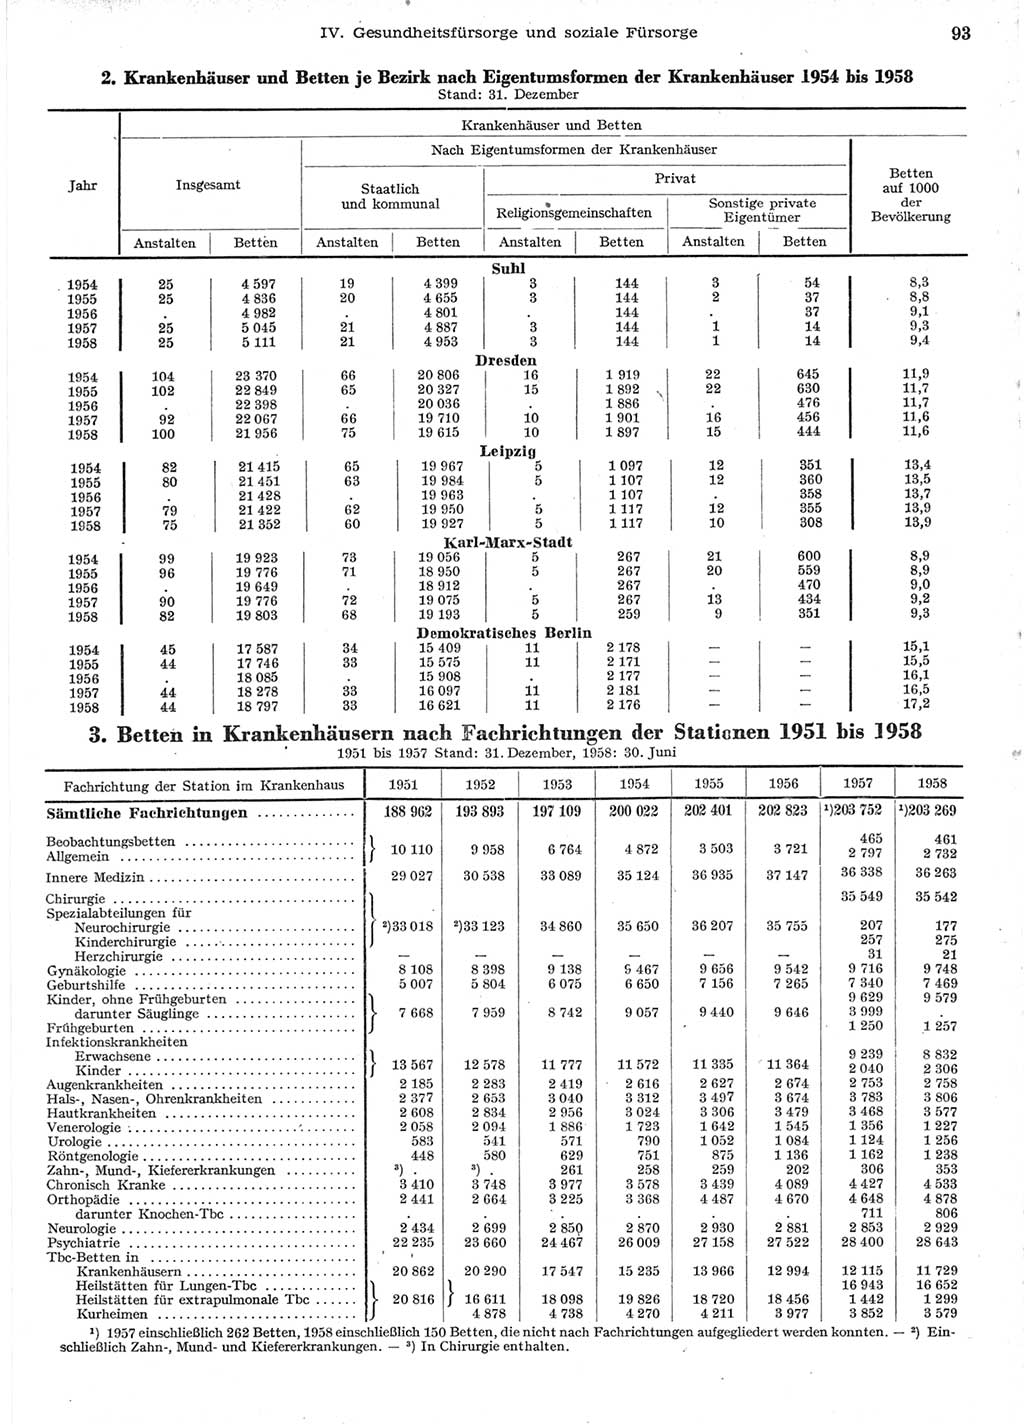 Statistisches Jahrbuch der Deutschen Demokratischen Republik (DDR) 1958, Seite 93 (Stat. Jb. DDR 1958, S. 93)